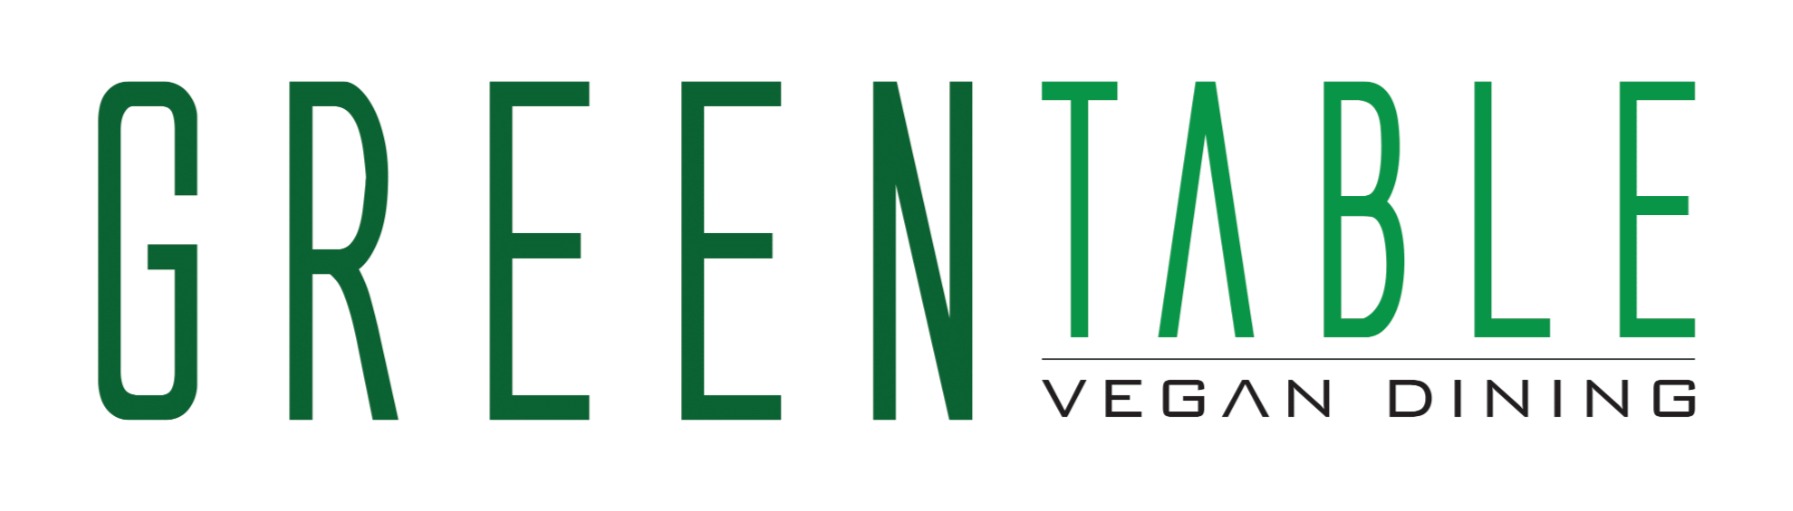 Logo des Unternehmens: Greentable Vegan Restaurant Rathaus in Hamburg